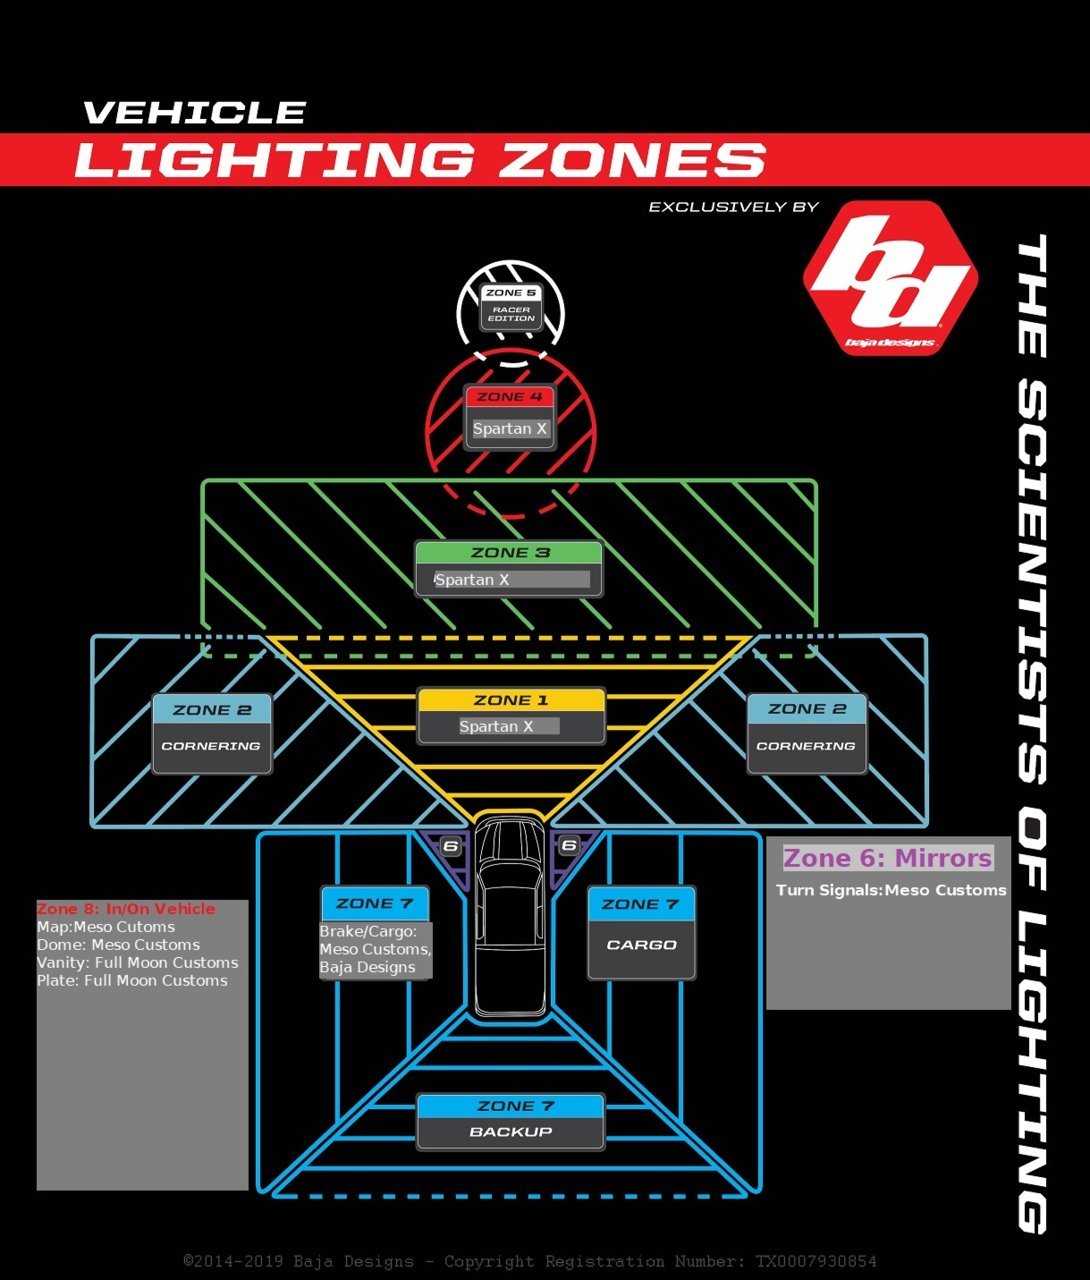 The Outlaw Lighting Zones Chart.jpg